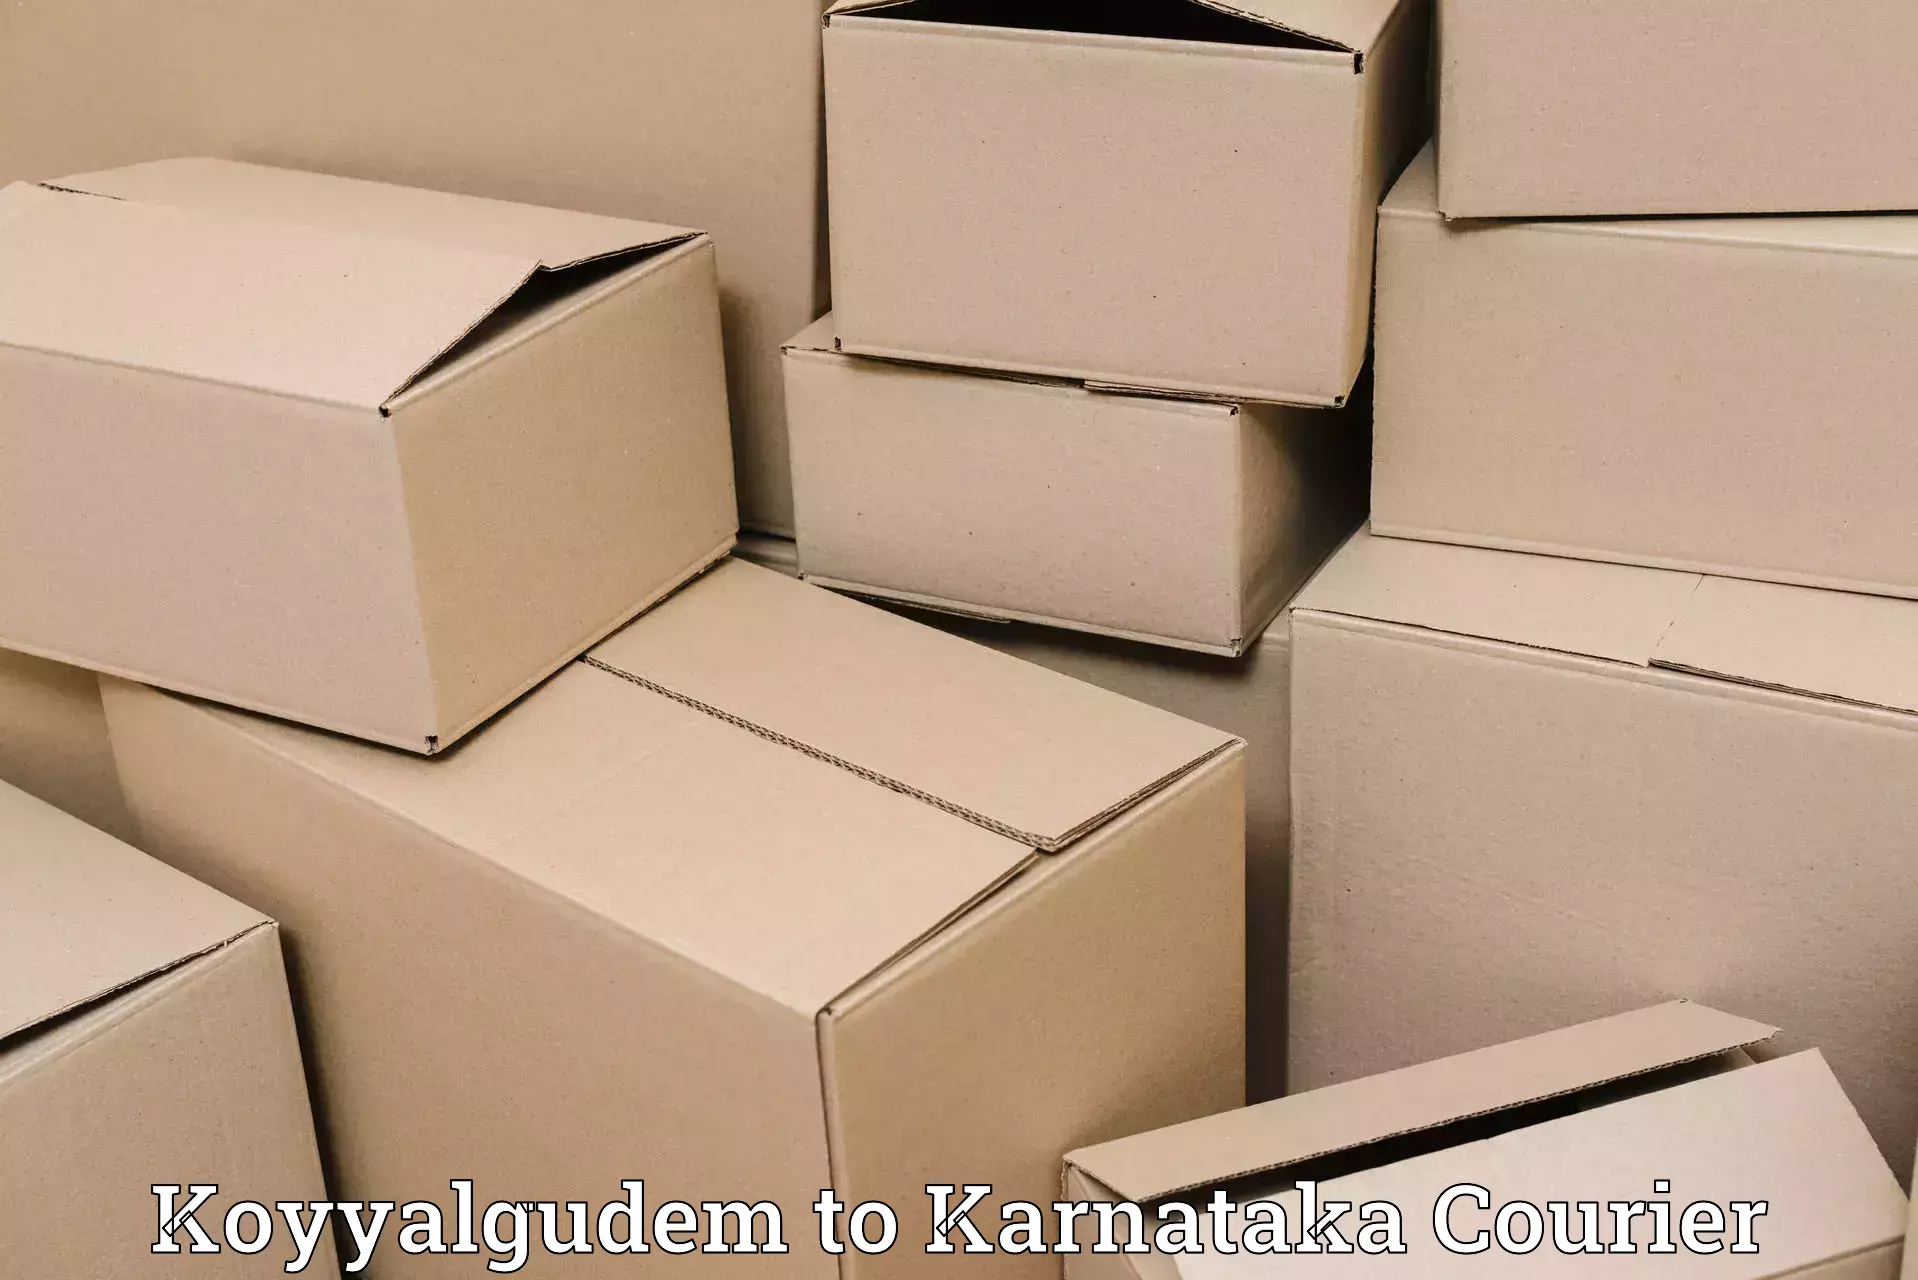 Affordable parcel service Koyyalgudem to Shimoga